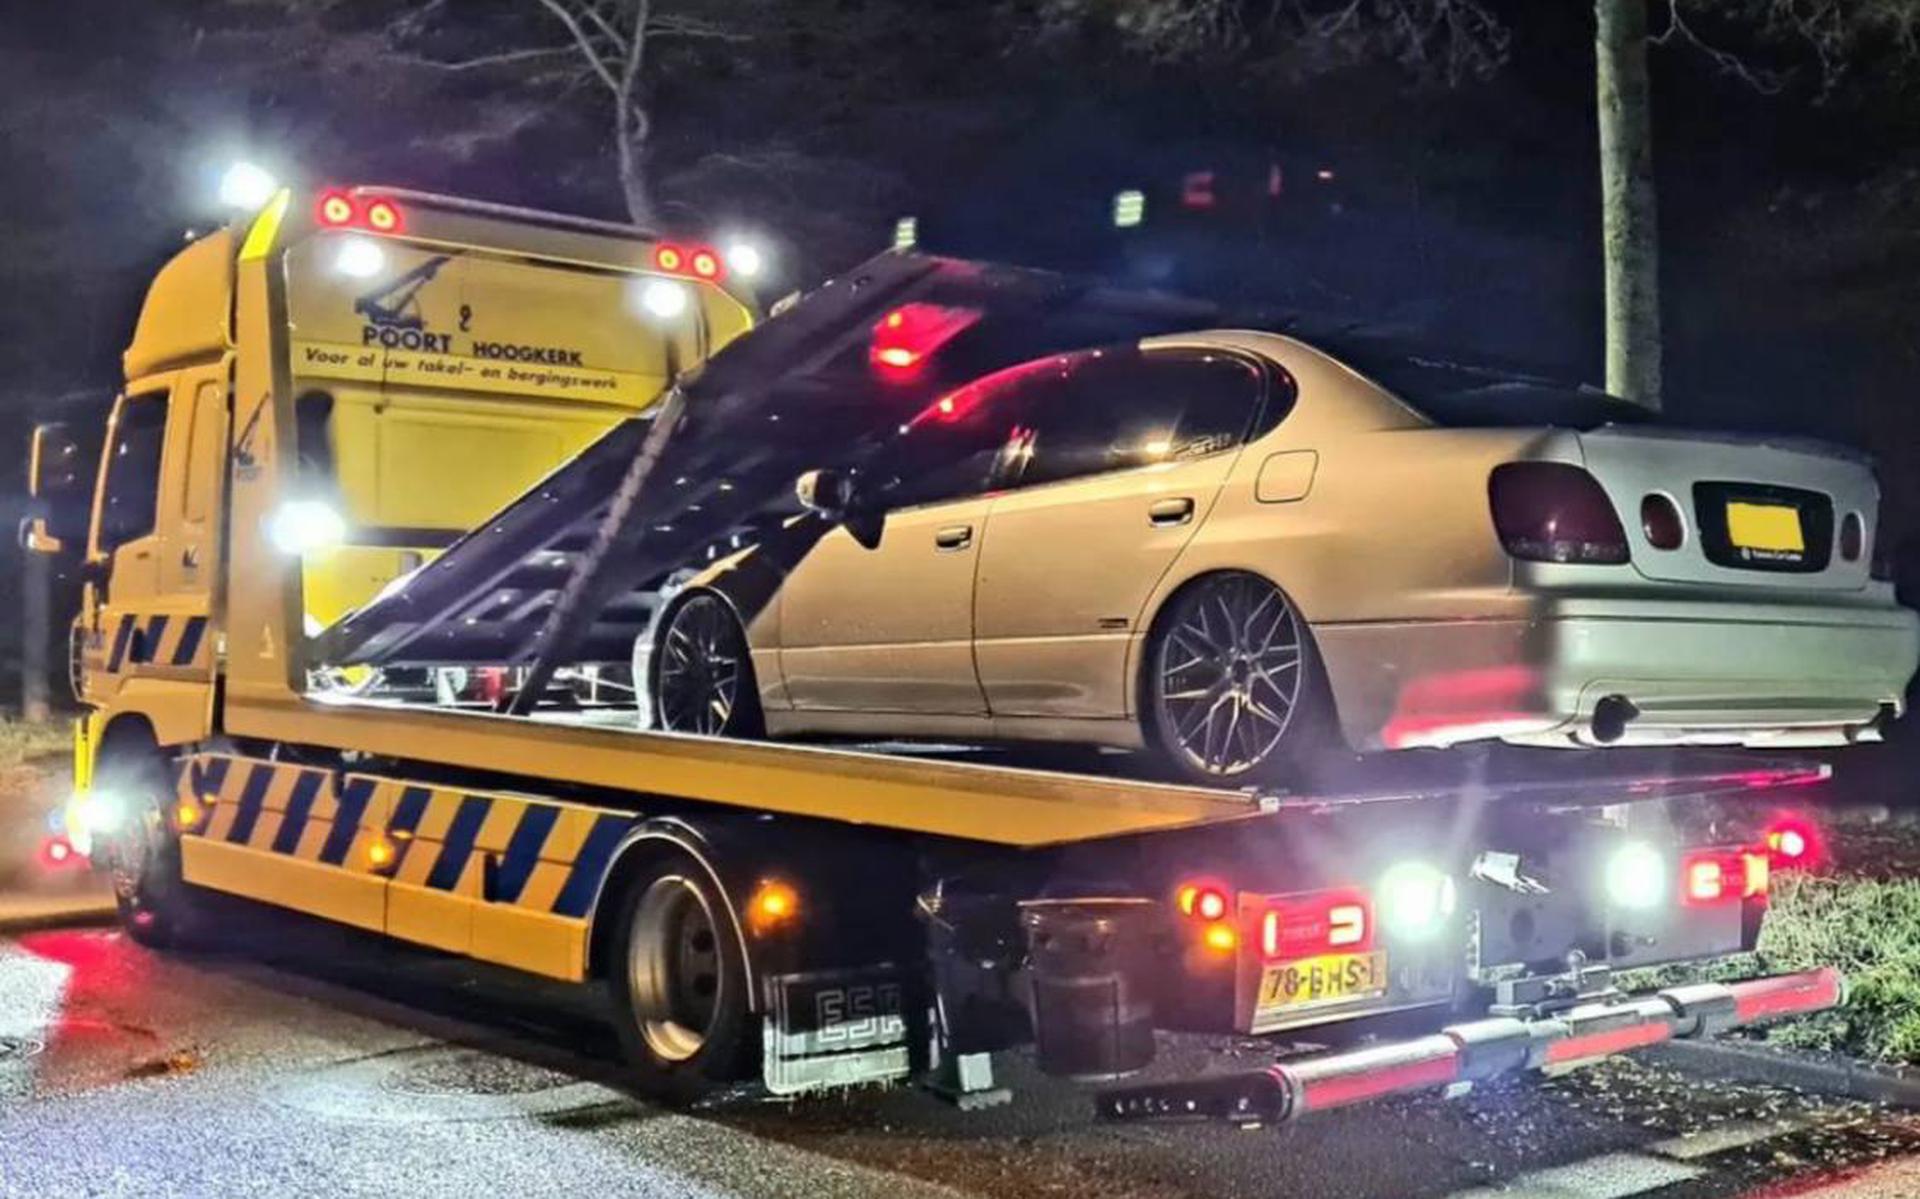 De politie heeft zaterdagavond een voertuig in beslag genomen na een straatrace aan de Jeverstraat in Groningen. 